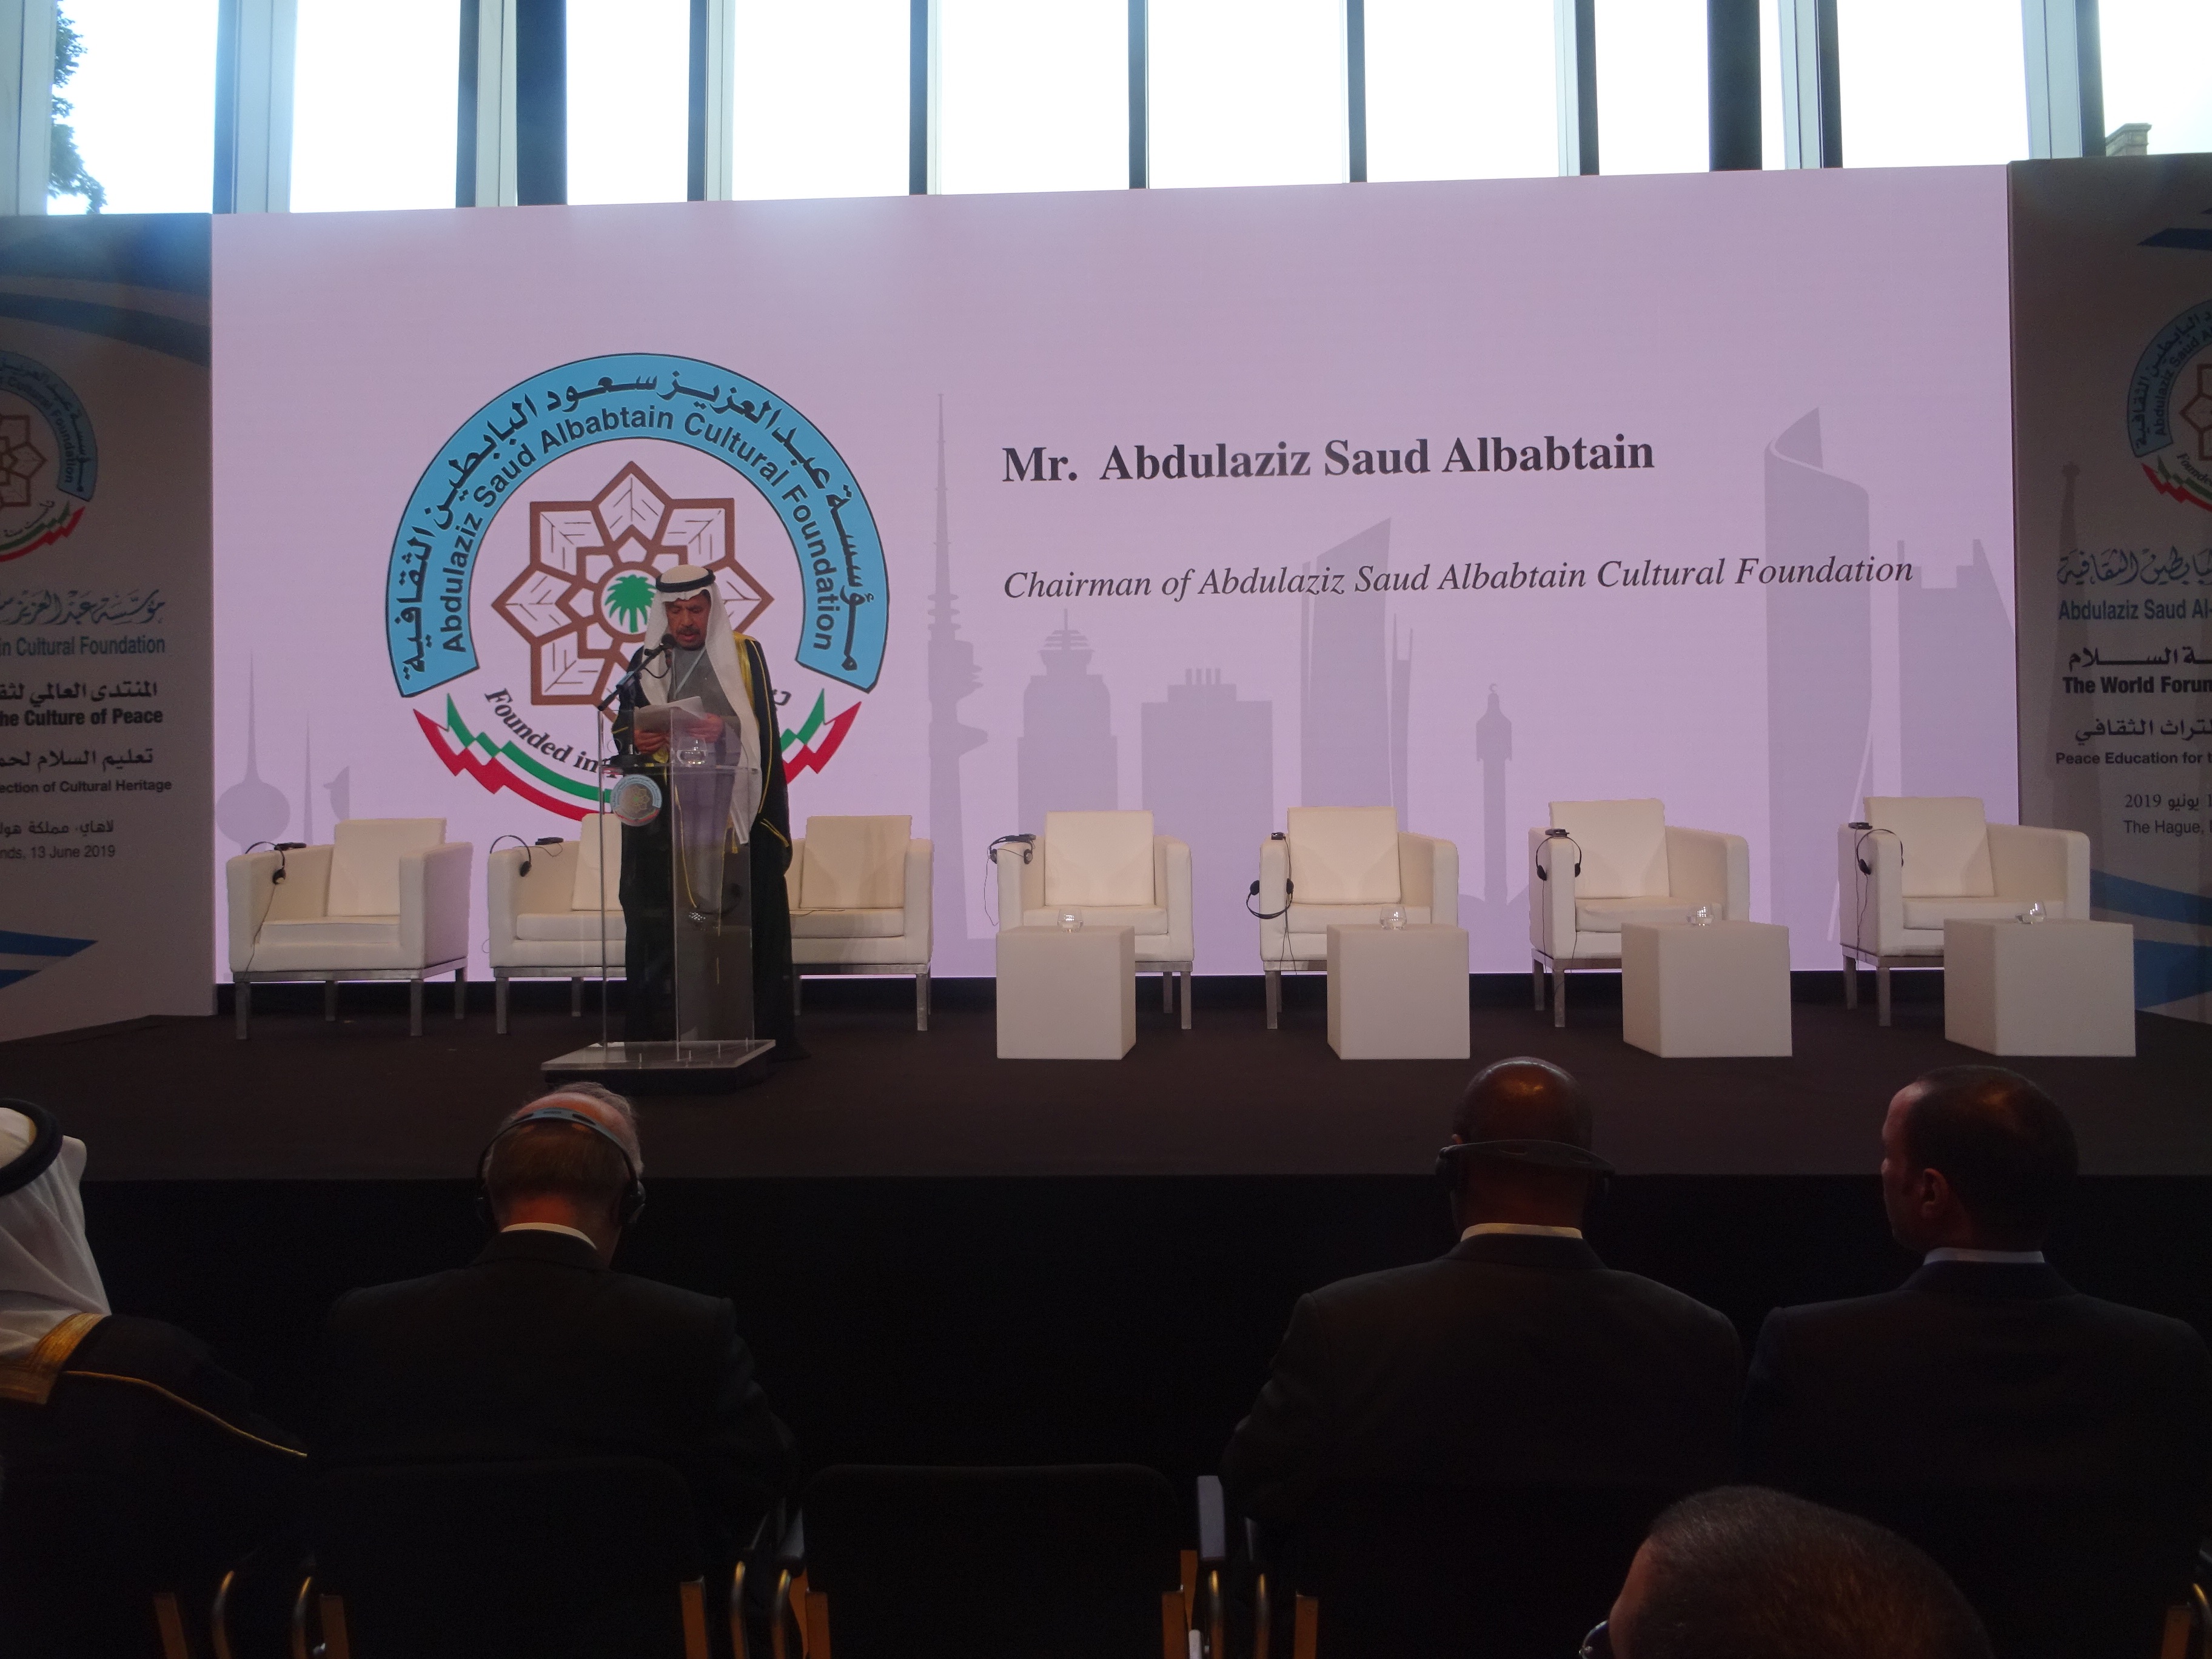 رئيس (مؤسسة عبدالعزيز سعود البابطين الثقافية الكويتية) عبدالعزيز البابطين يلقي كلمته في المنتدى العالمي لثقافة السلام